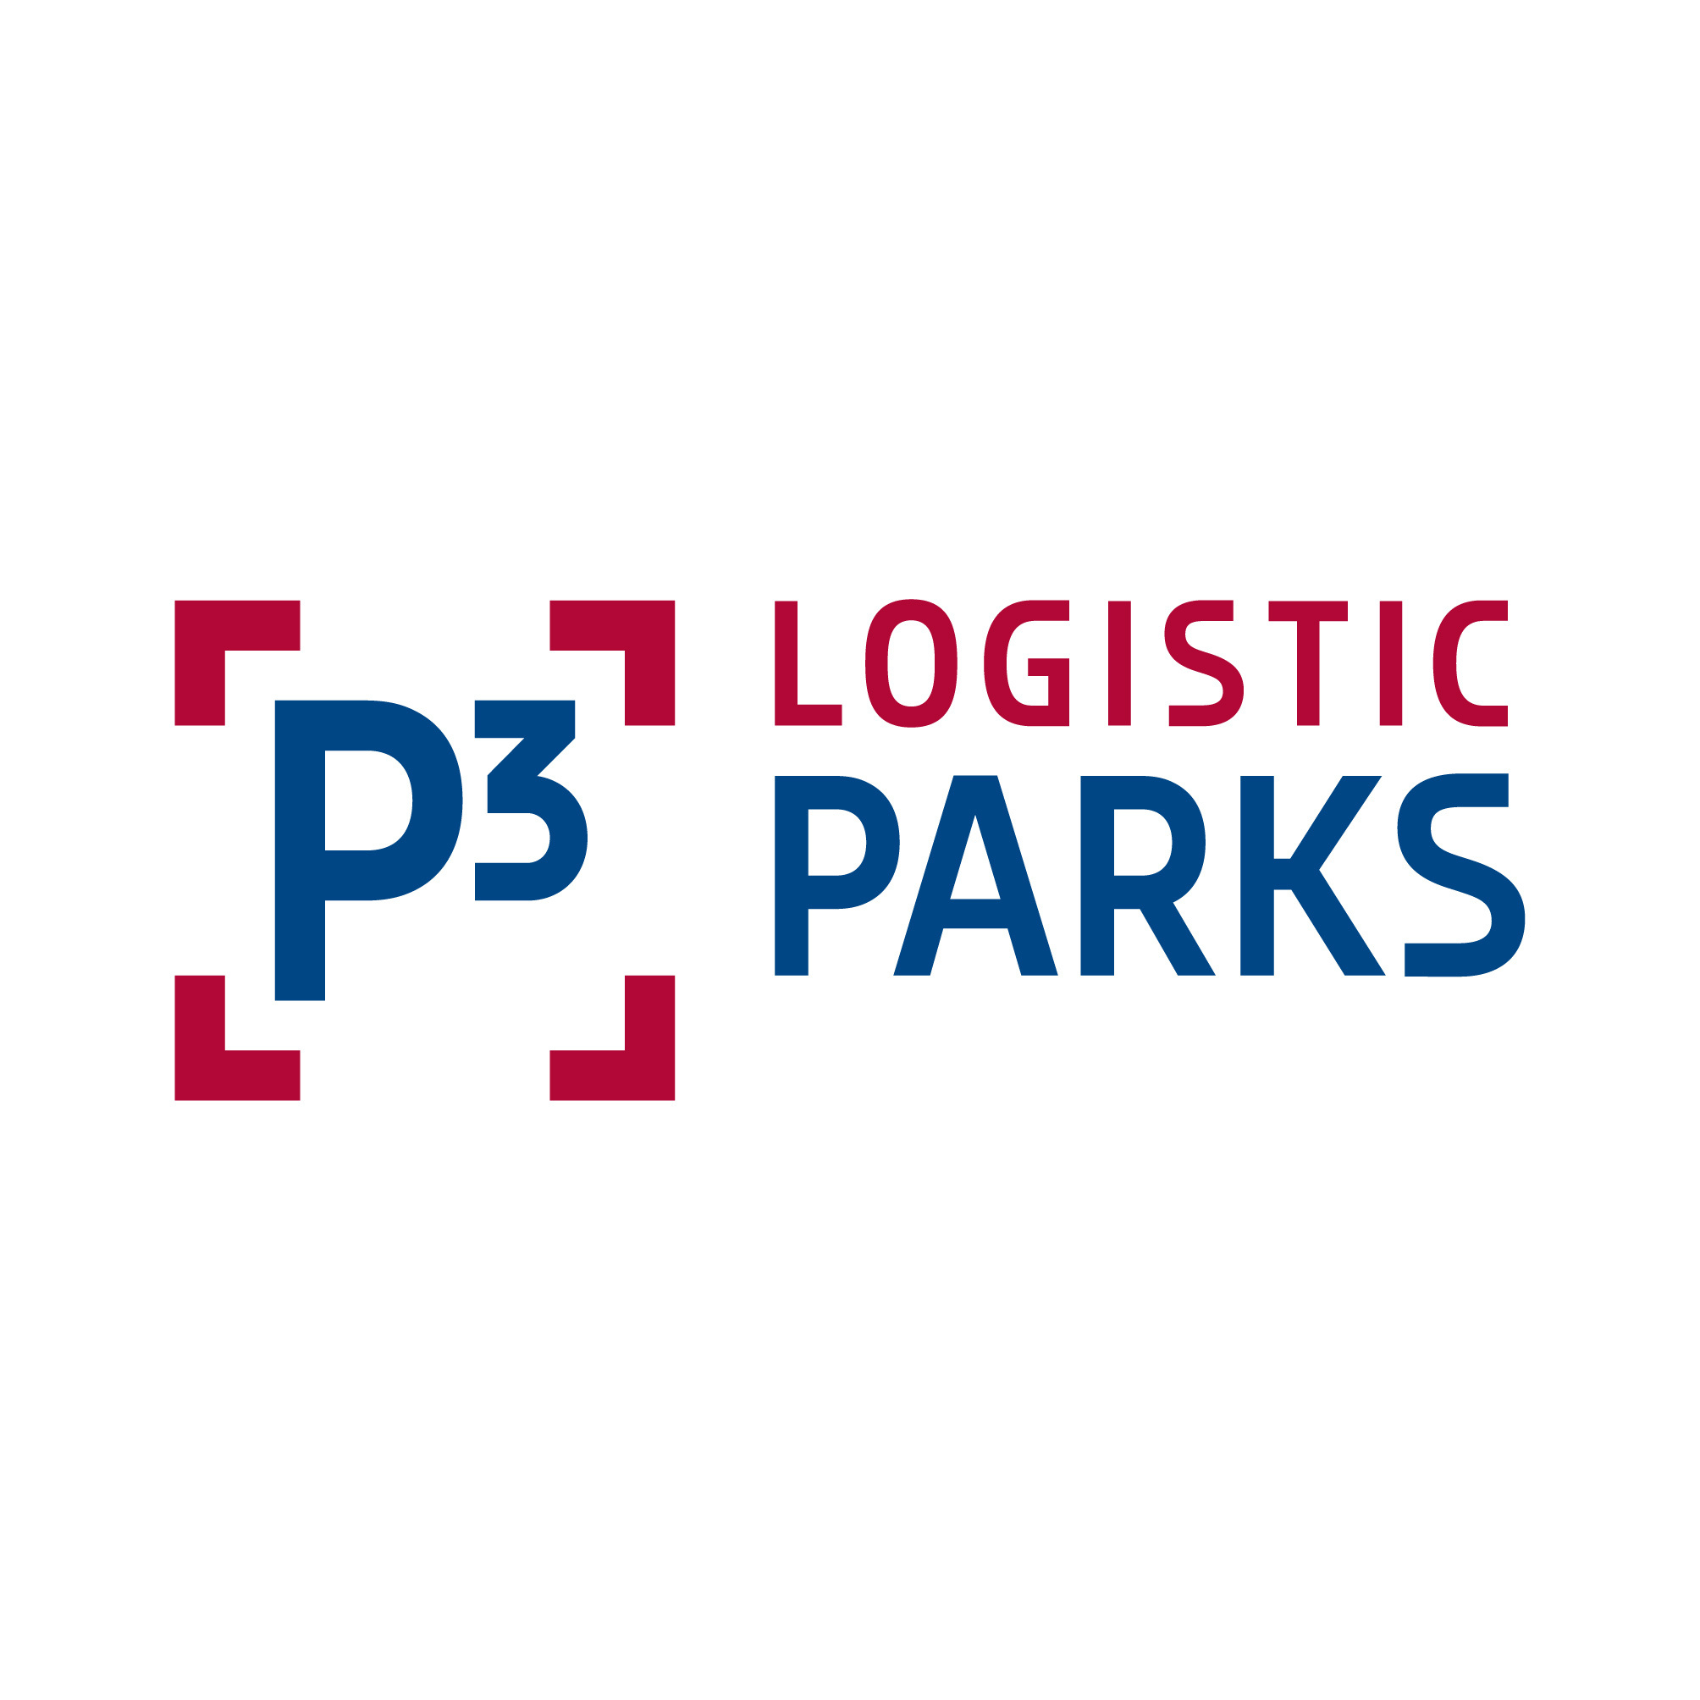 P3 Logistic Parks